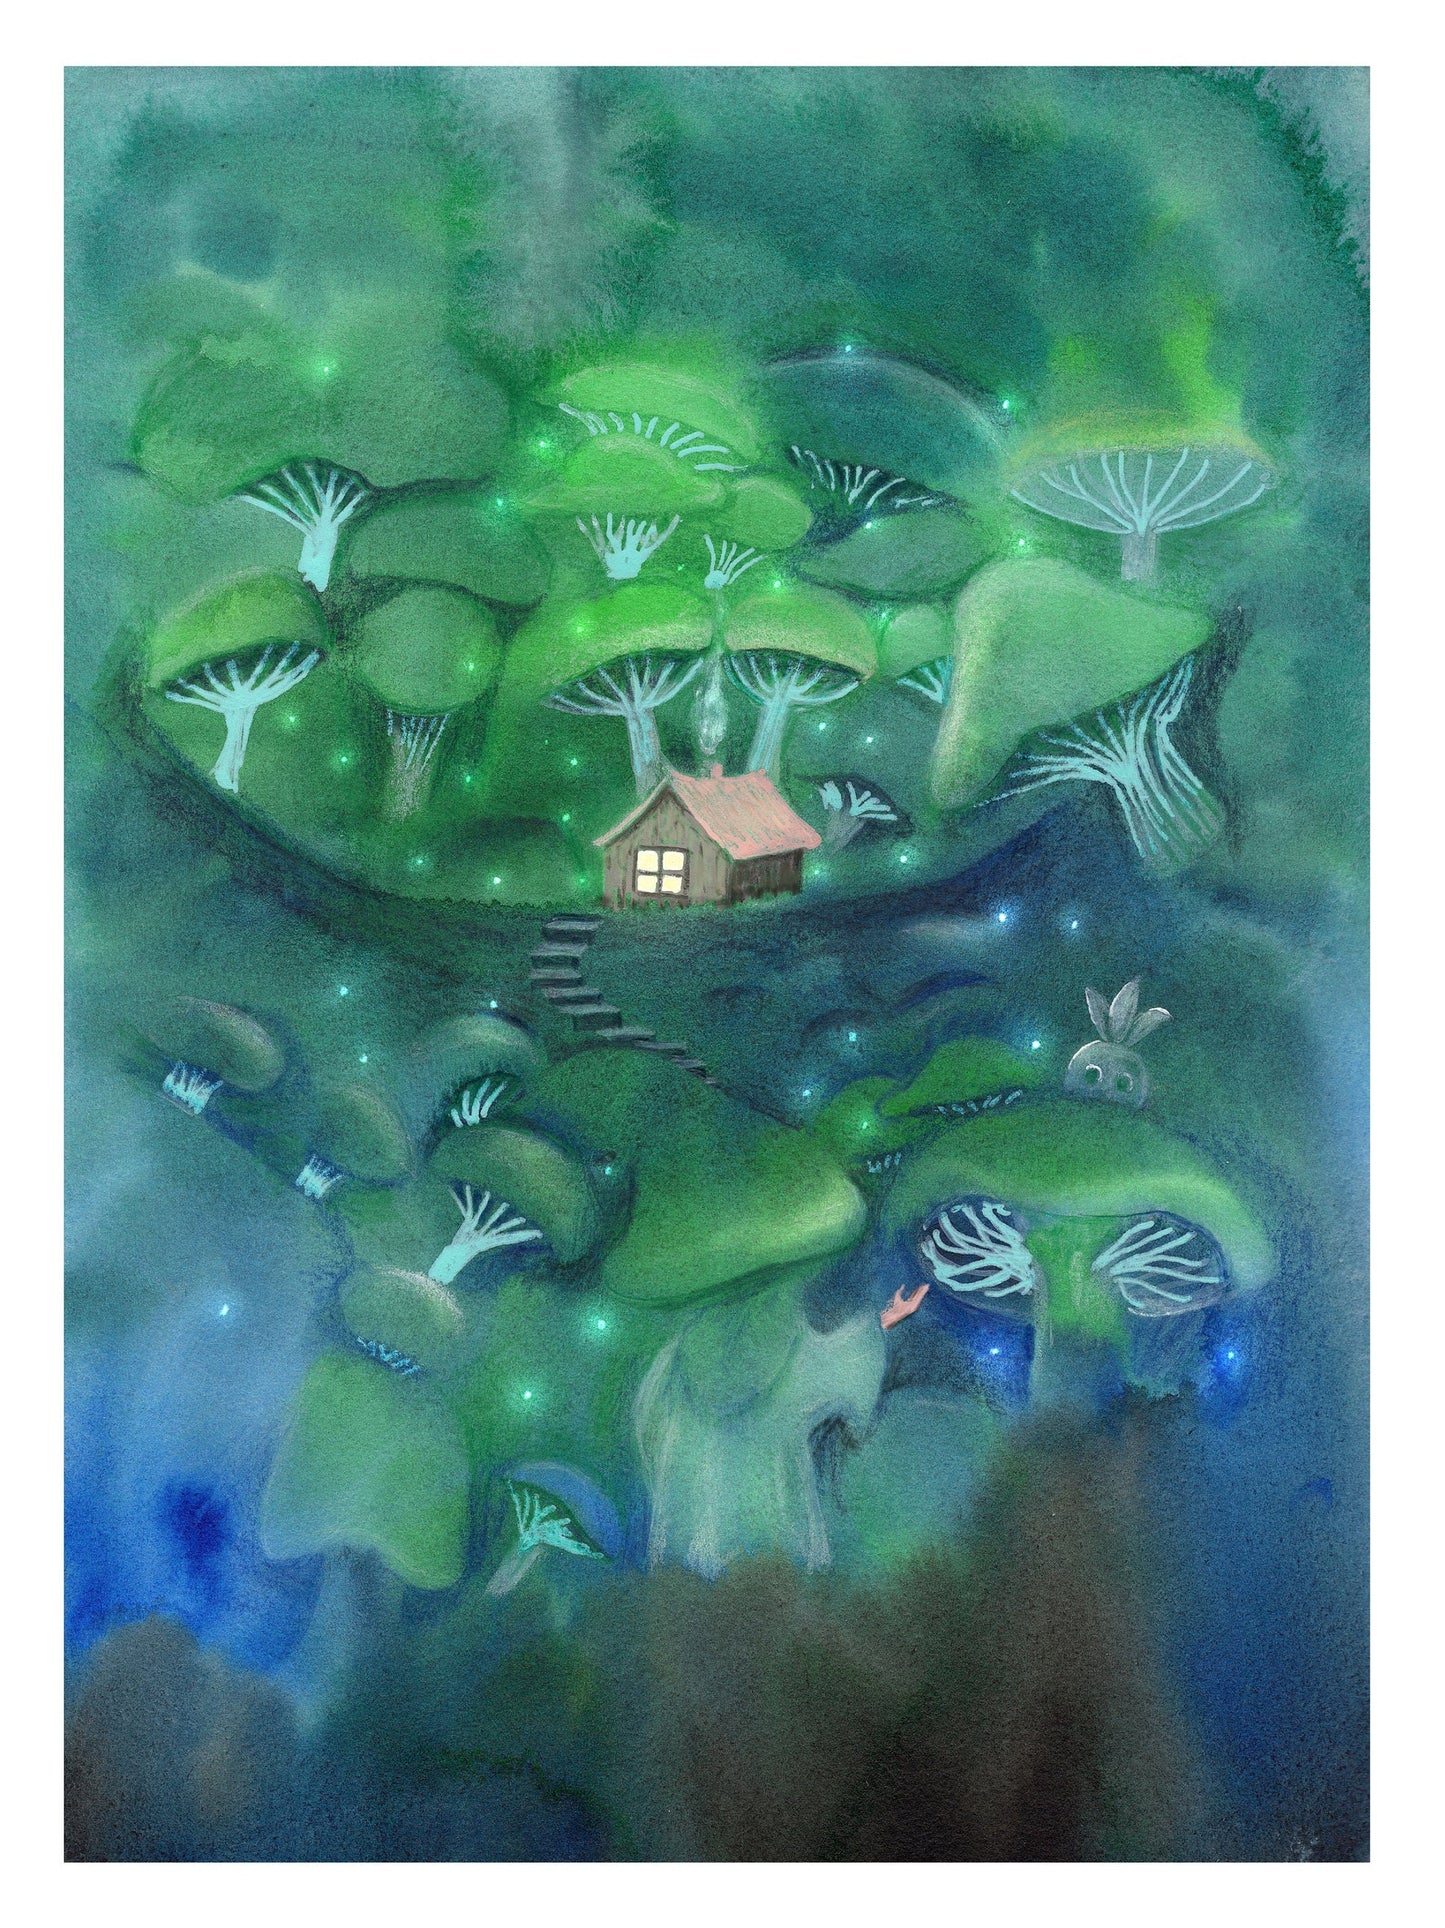 Zauberer im Pilzwald | Kunstdruck auf Aquarellpapier 32x27cm - handsigniert und limitiert